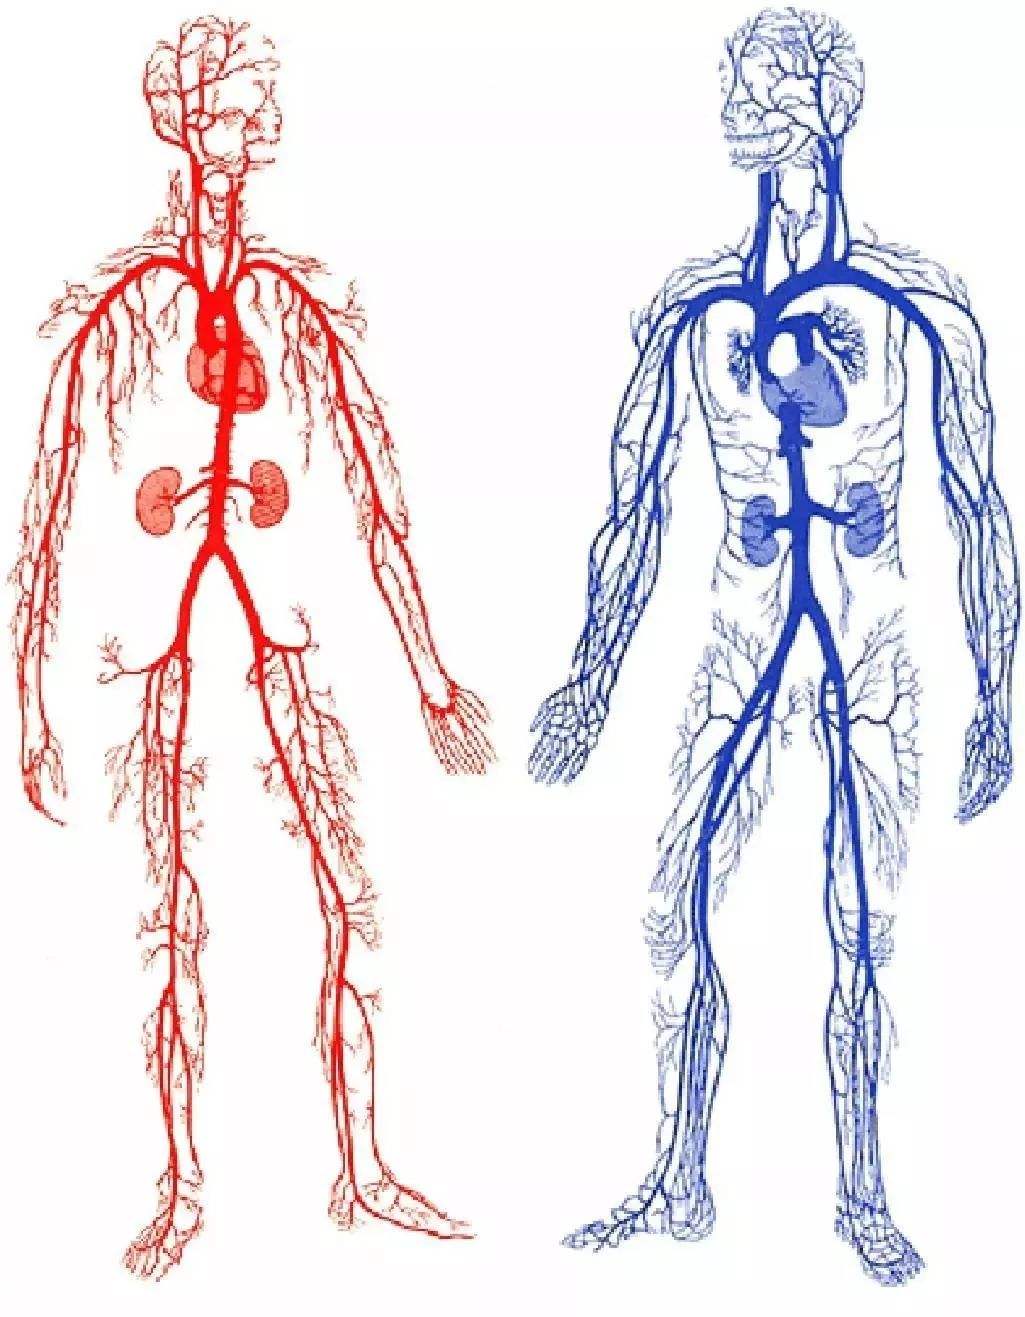 人体全身血管走向图图片